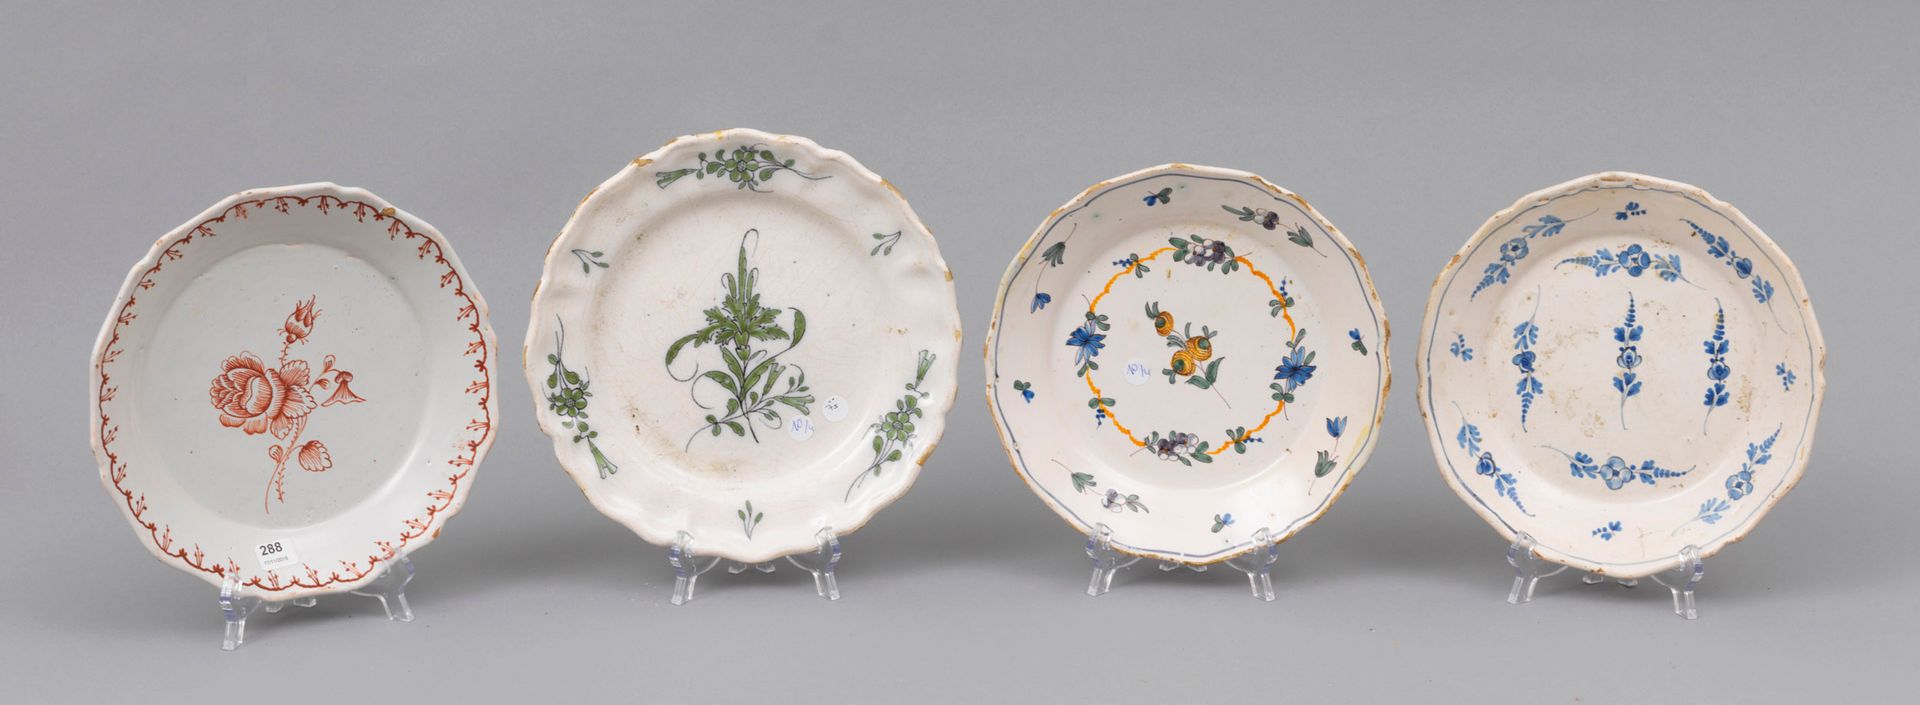 Faience Nevers 
内韦尔 

四个陶器盘子，有轮廓的边缘，有多色或橙色或蓝色的camaïeu花卉装饰。

18世纪

薯片

直径23厘米